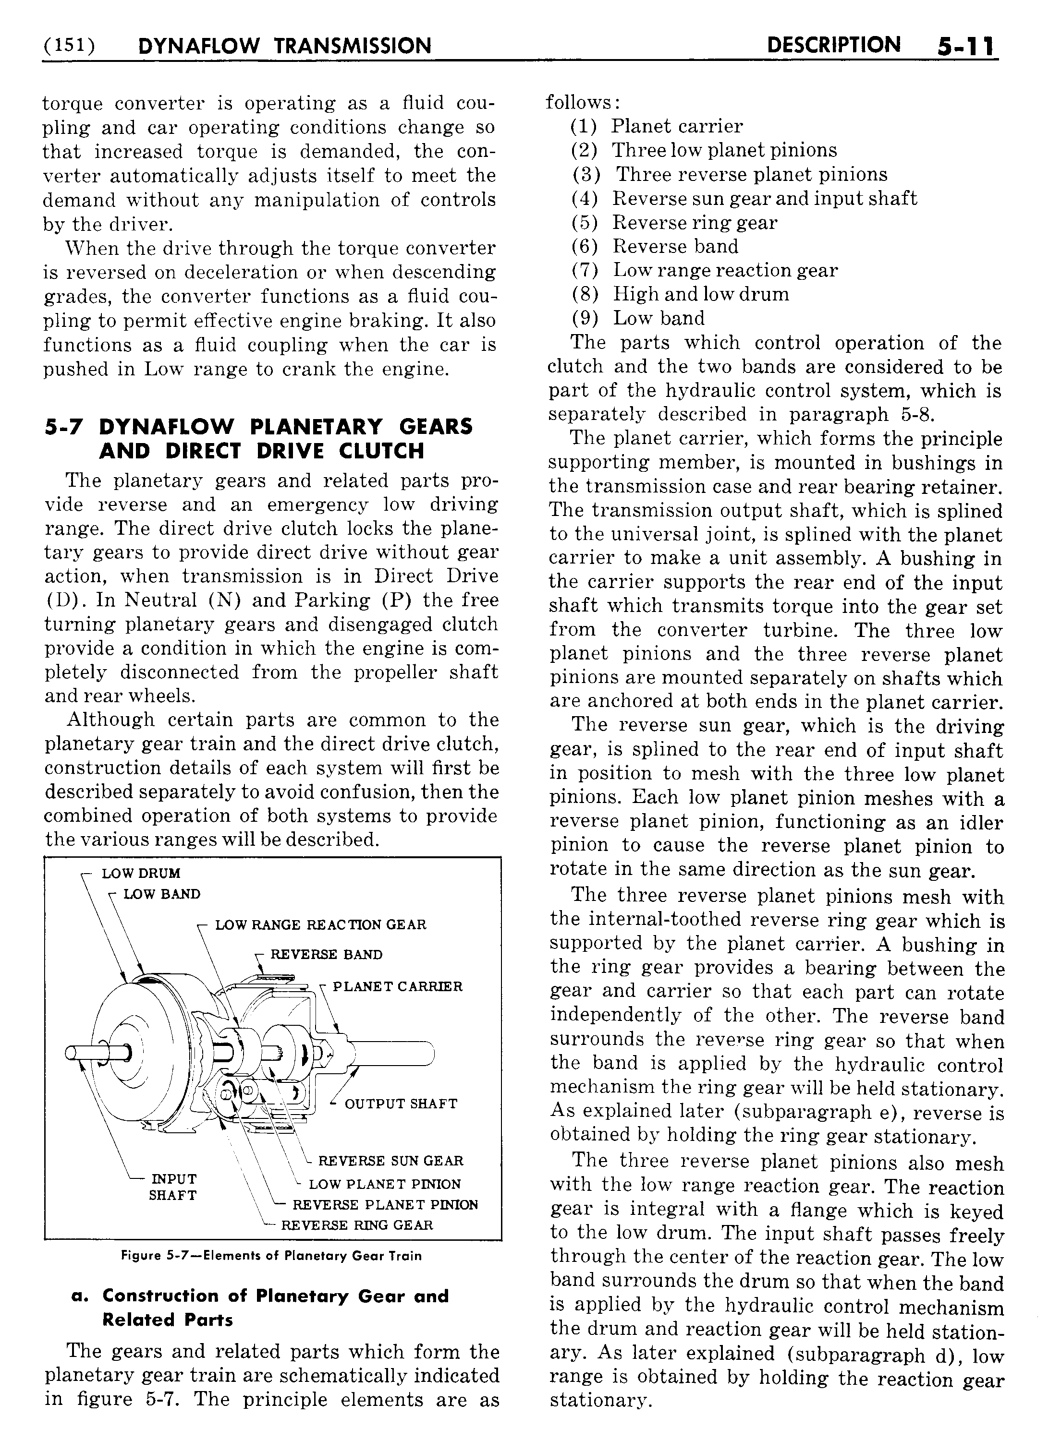 n_06 1955 Buick Shop Manual - Dynaflow-011-011.jpg